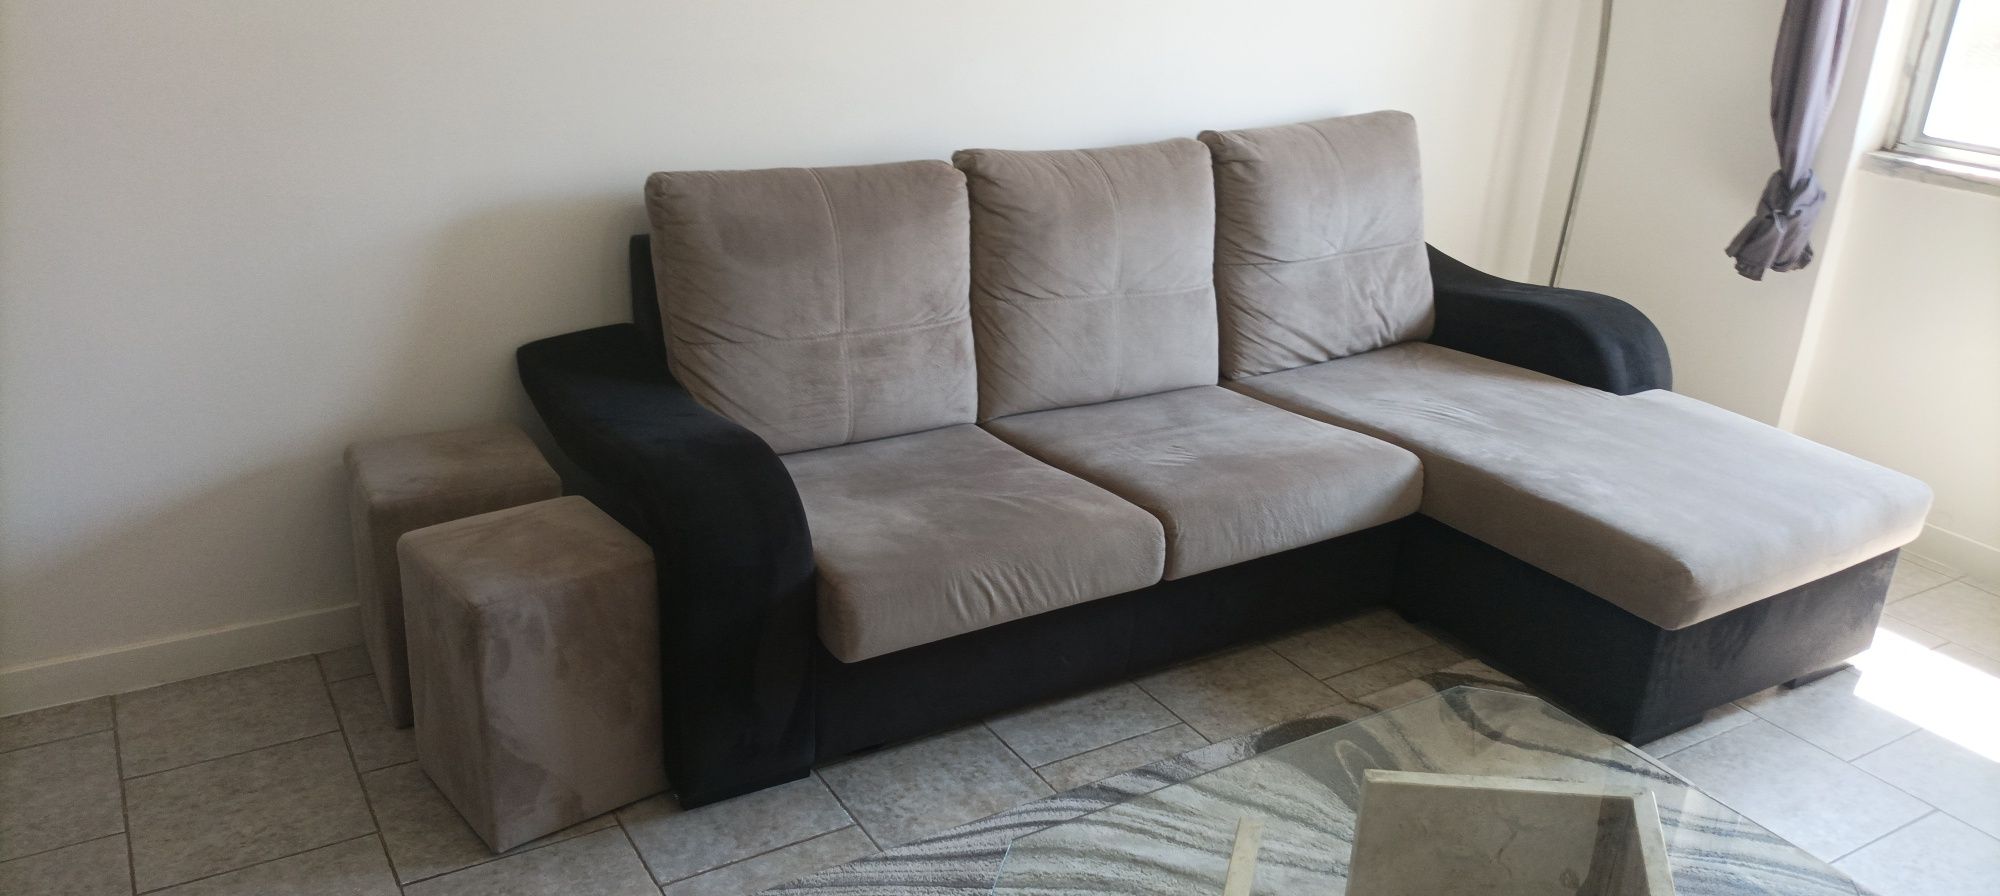 Sofá chaise longue cinzento e preto